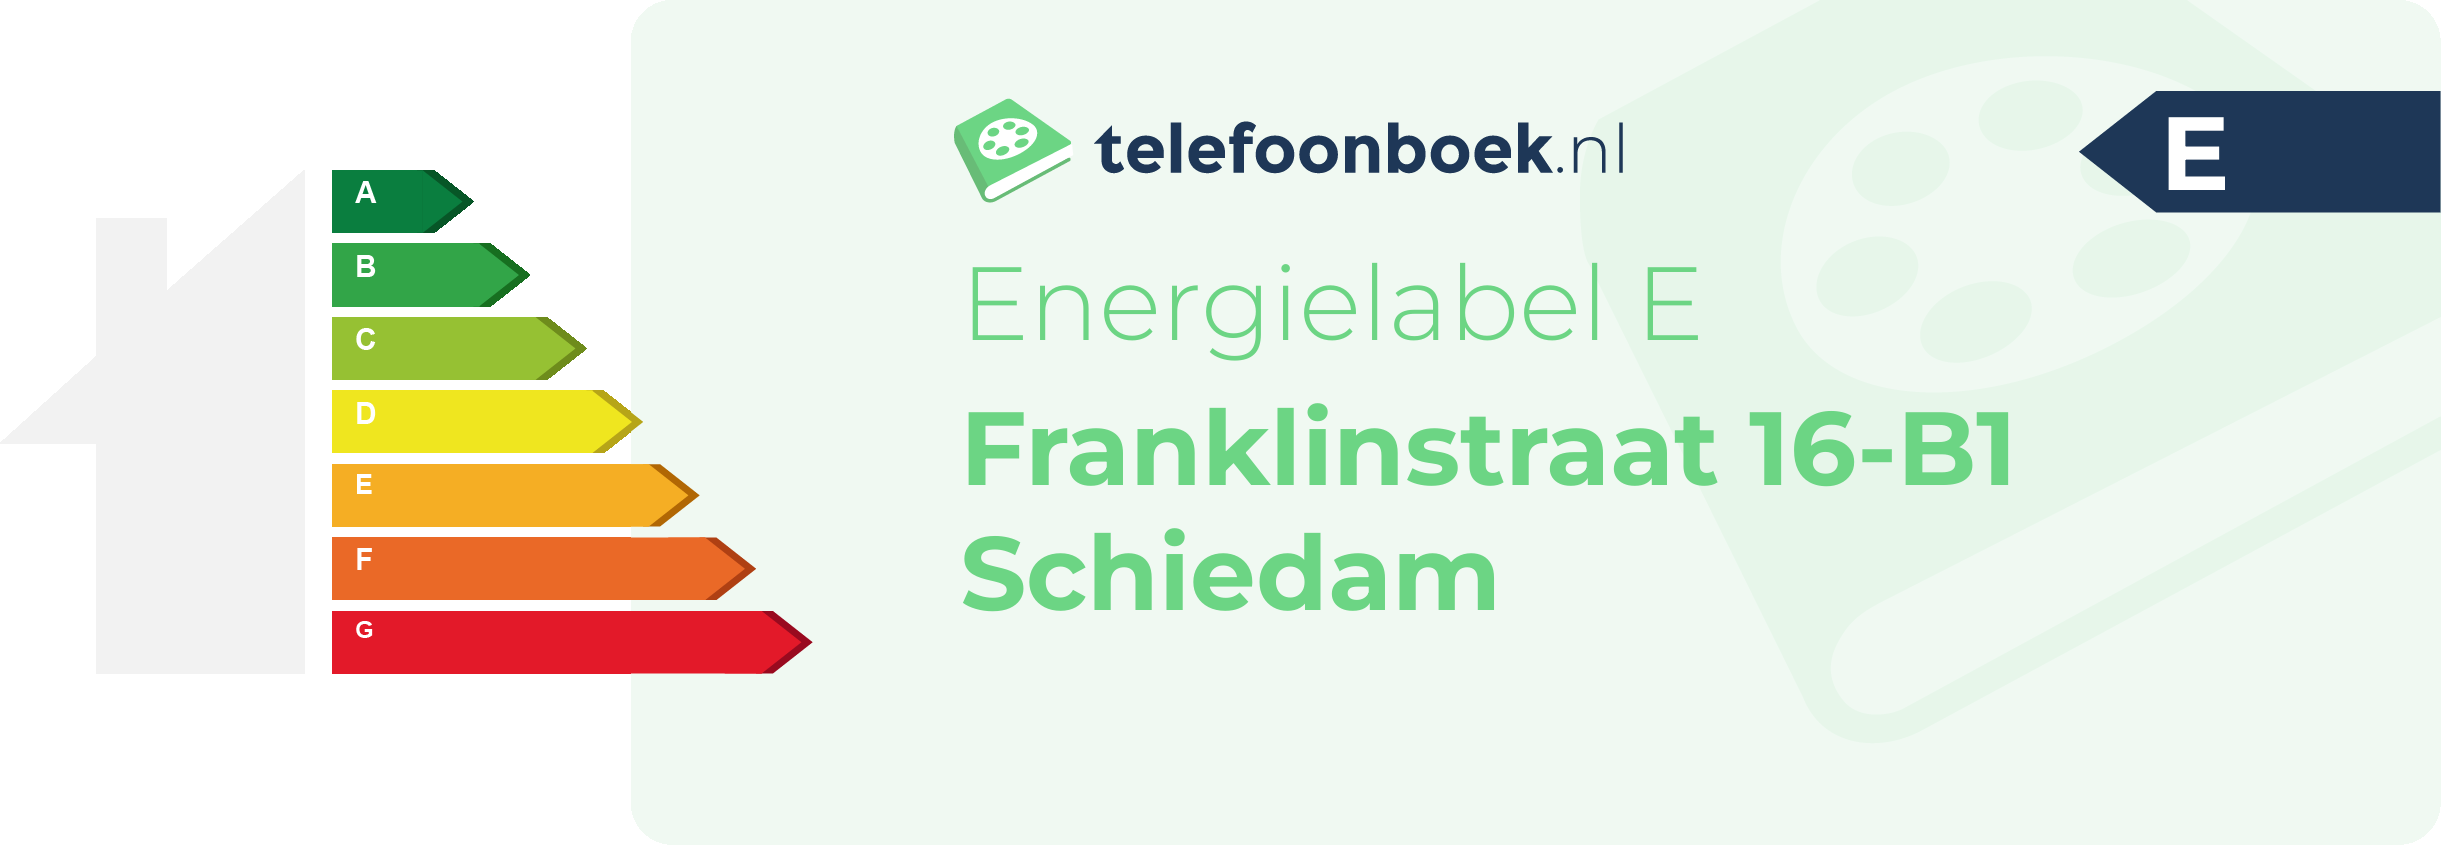 Energielabel Franklinstraat 16-B1 Schiedam